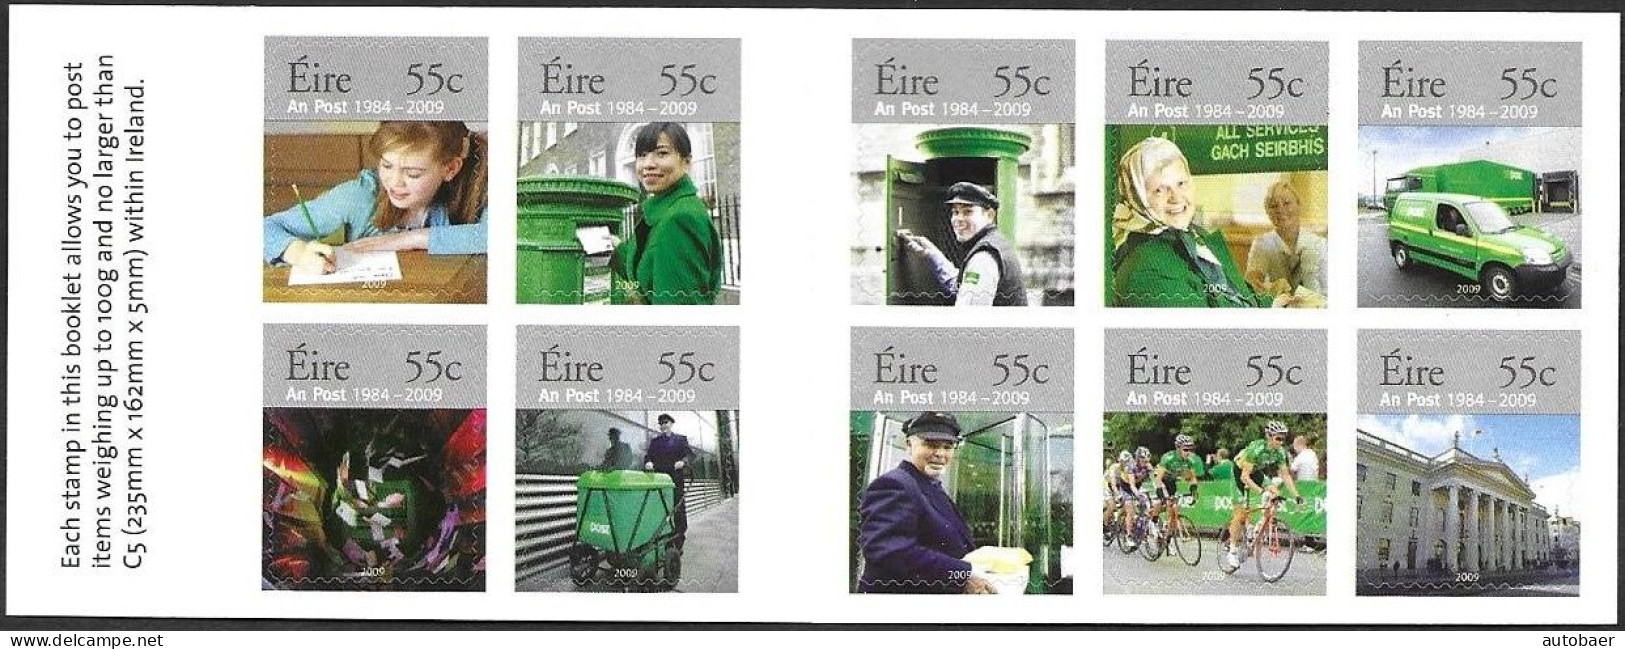 Irland Eire Ireland 2009 25 Years AN-Post Michel No 1866-75 Markenheftchen Carnet Booklet MNH Postfrisch Neuf ** - Booklets